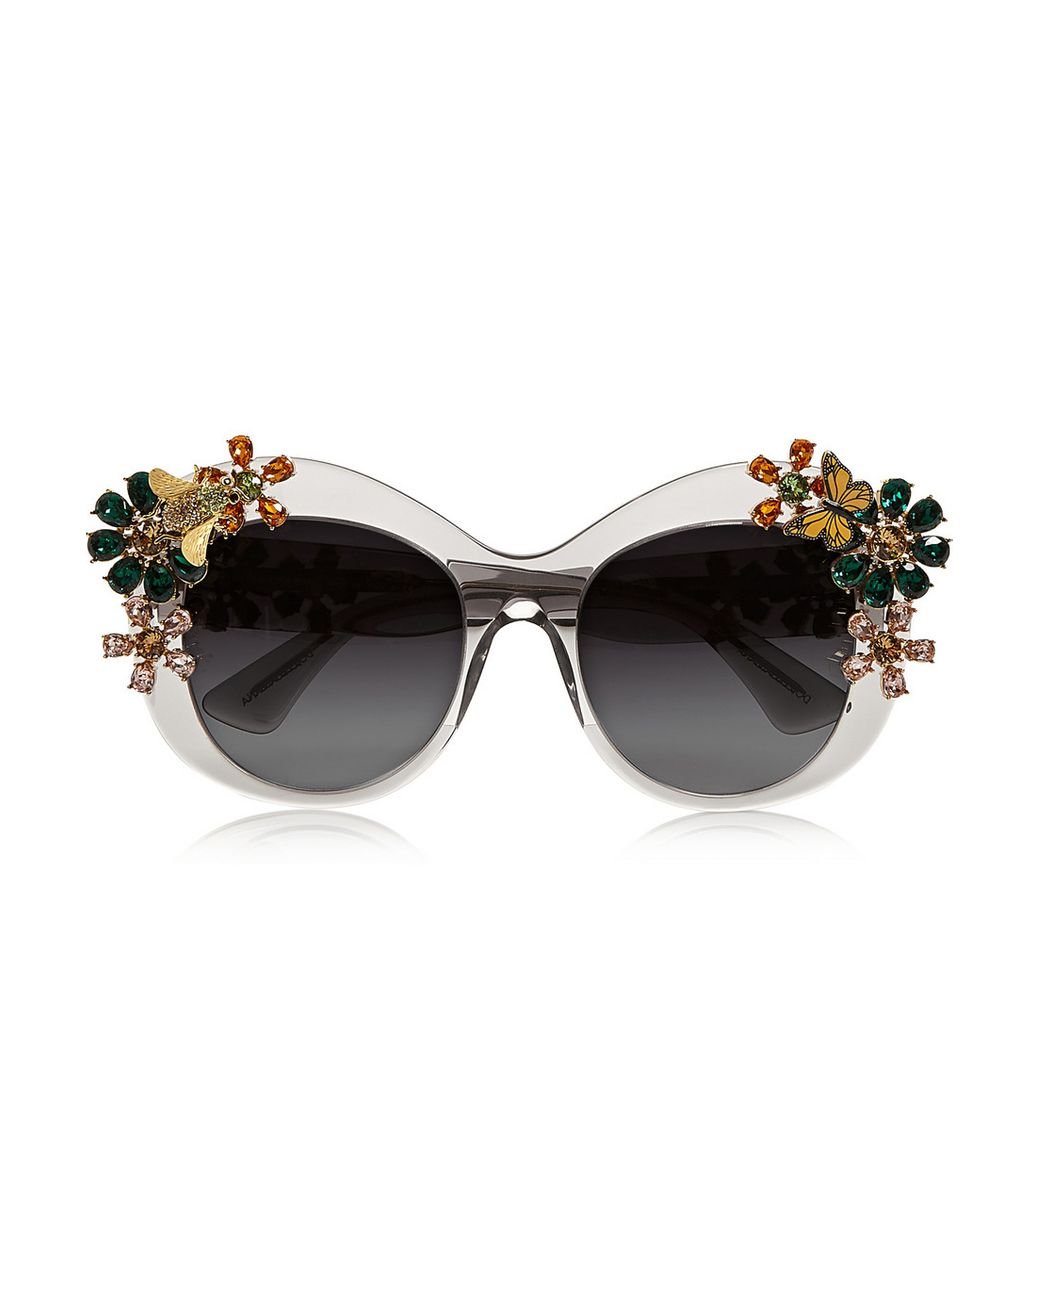 Dolce & Gabbana Swarovski Crystal-Embellished Square-Frame Acetate